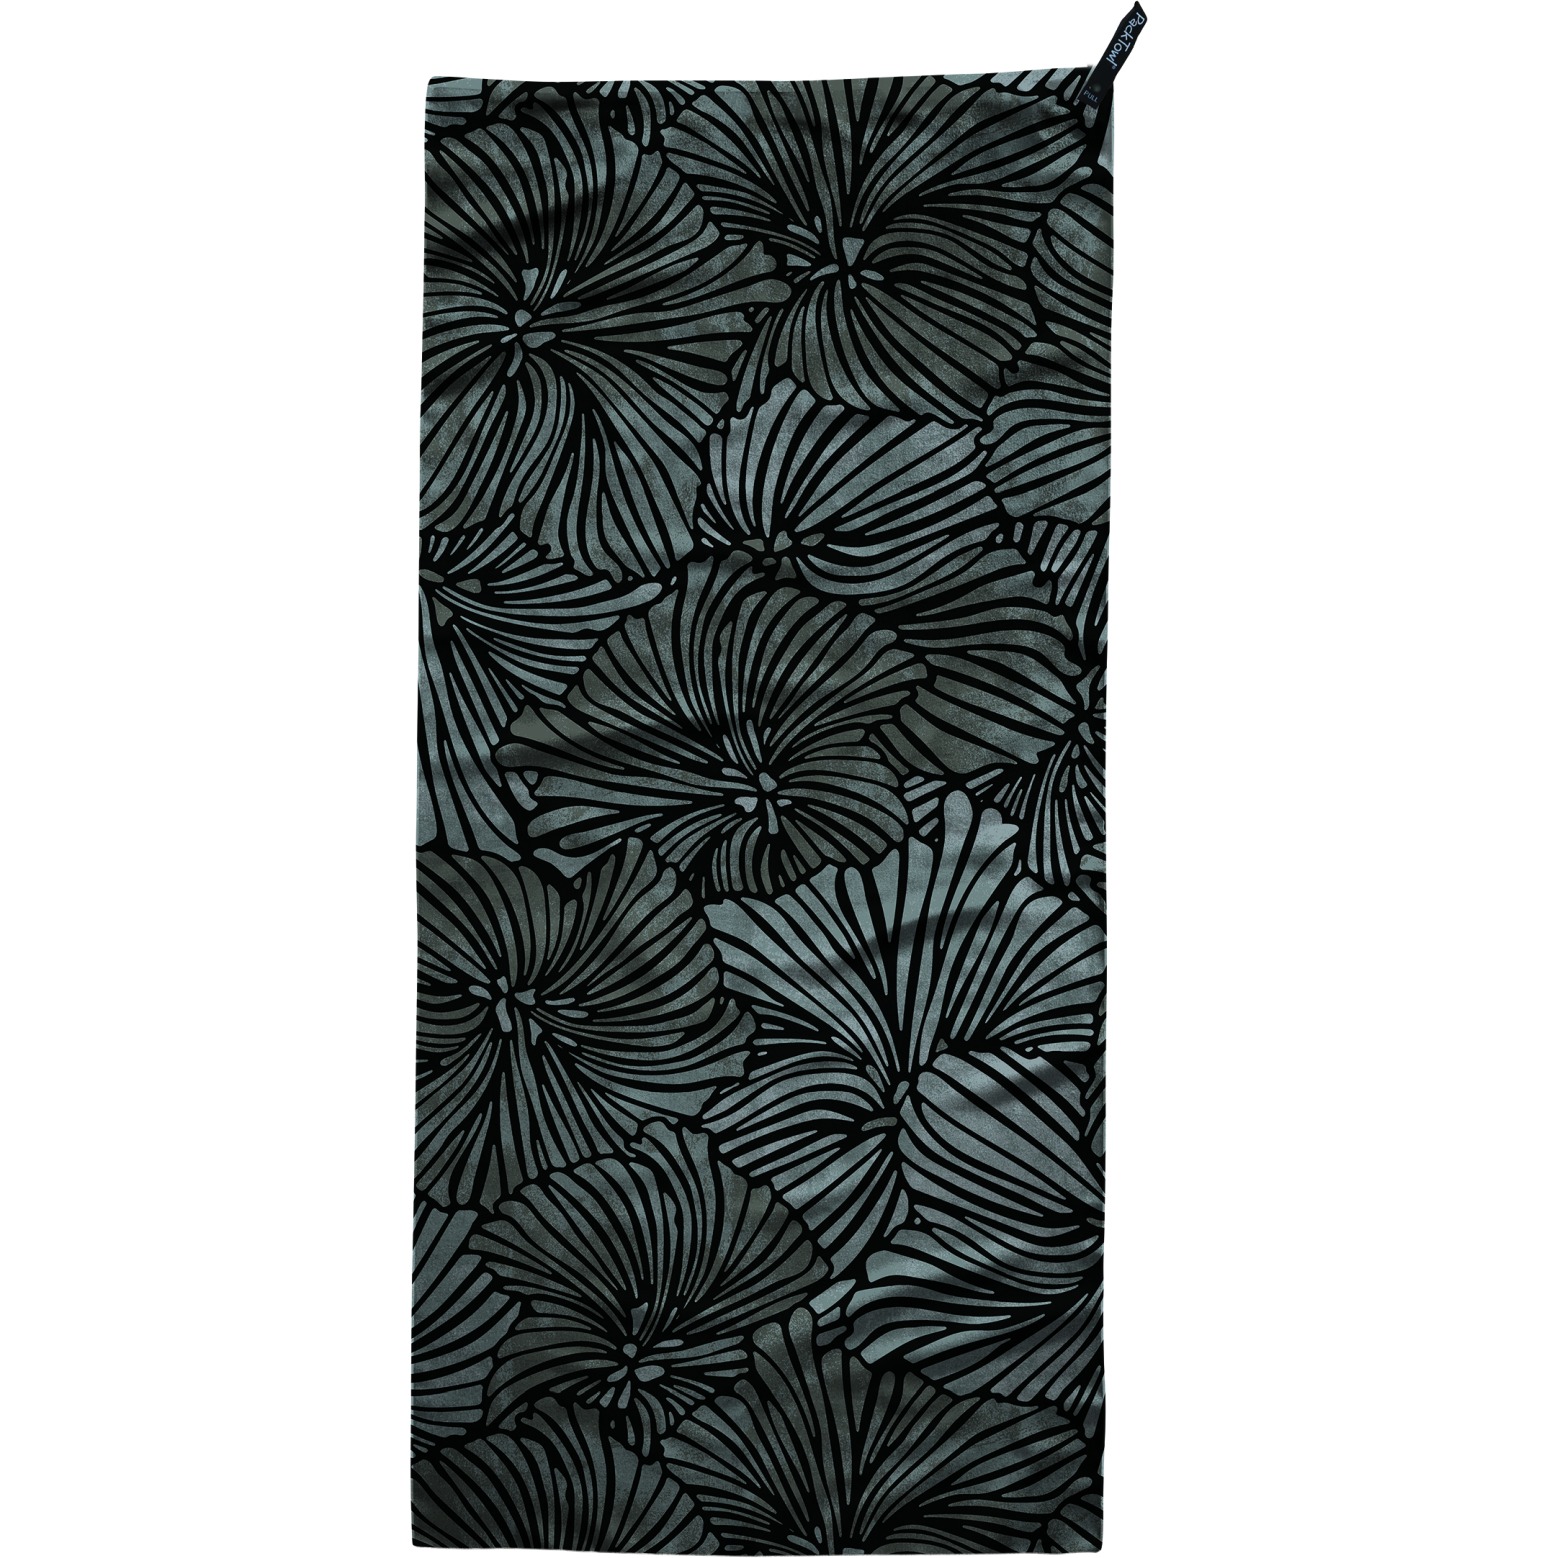 Produktbild von PackTowl Ultralite Hand - Handtuch - bloom noir